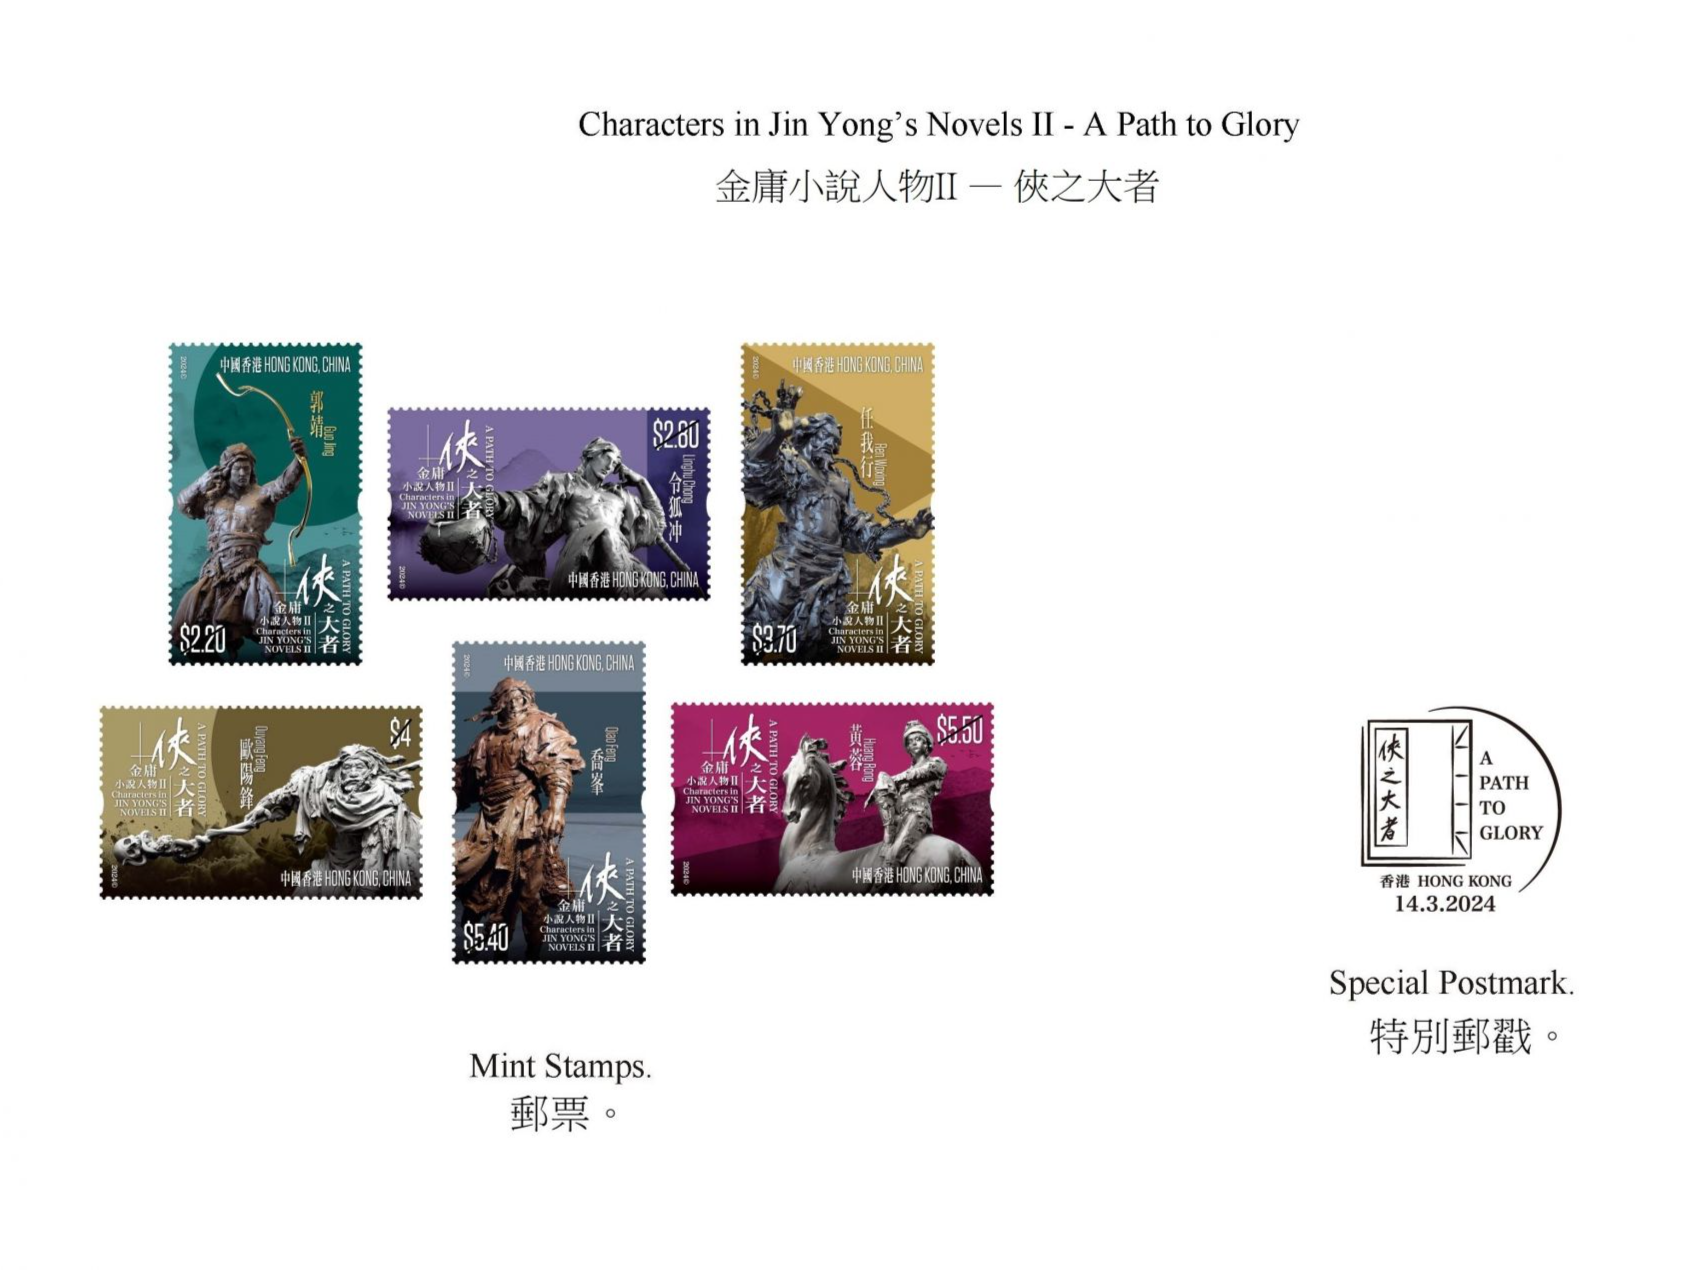 香港邮政将发行金庸小说人物特别邮票 